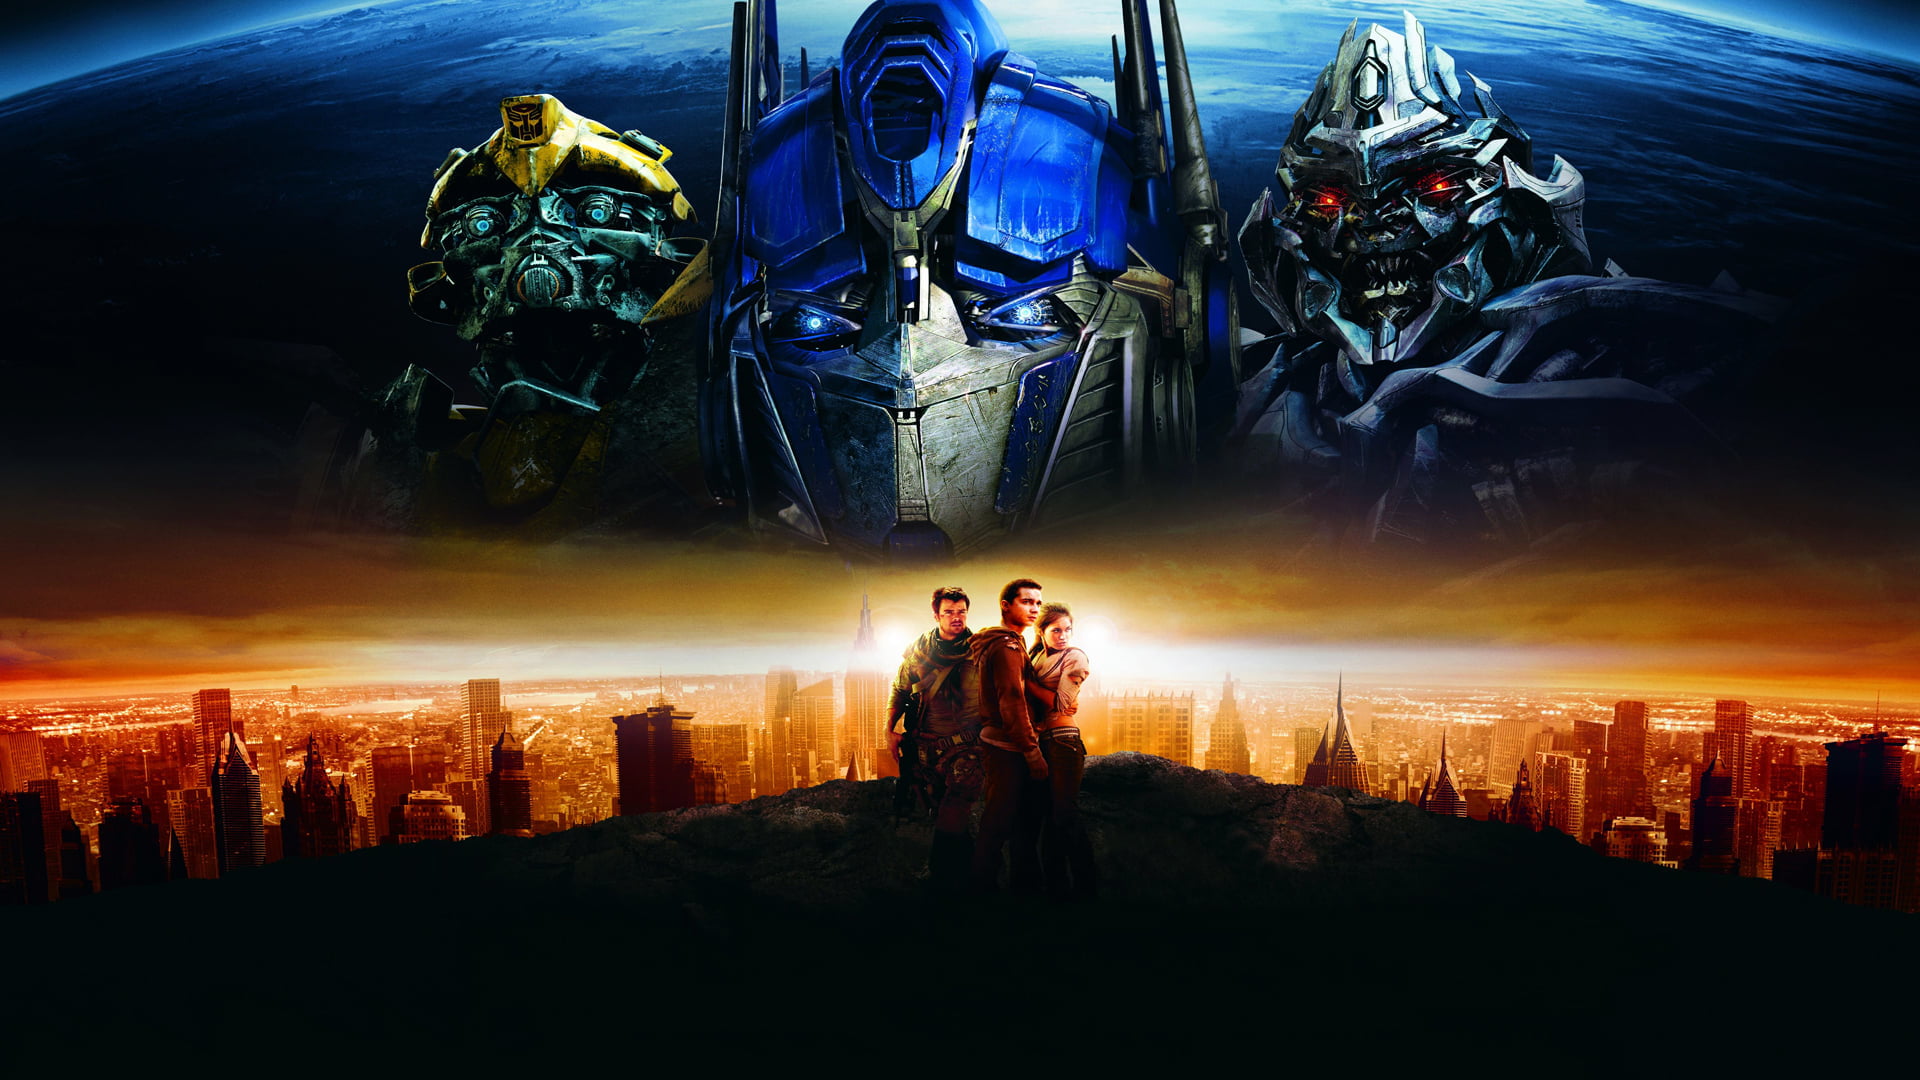 Autobots, Decepticons, Optimus Prime, Bumblebee